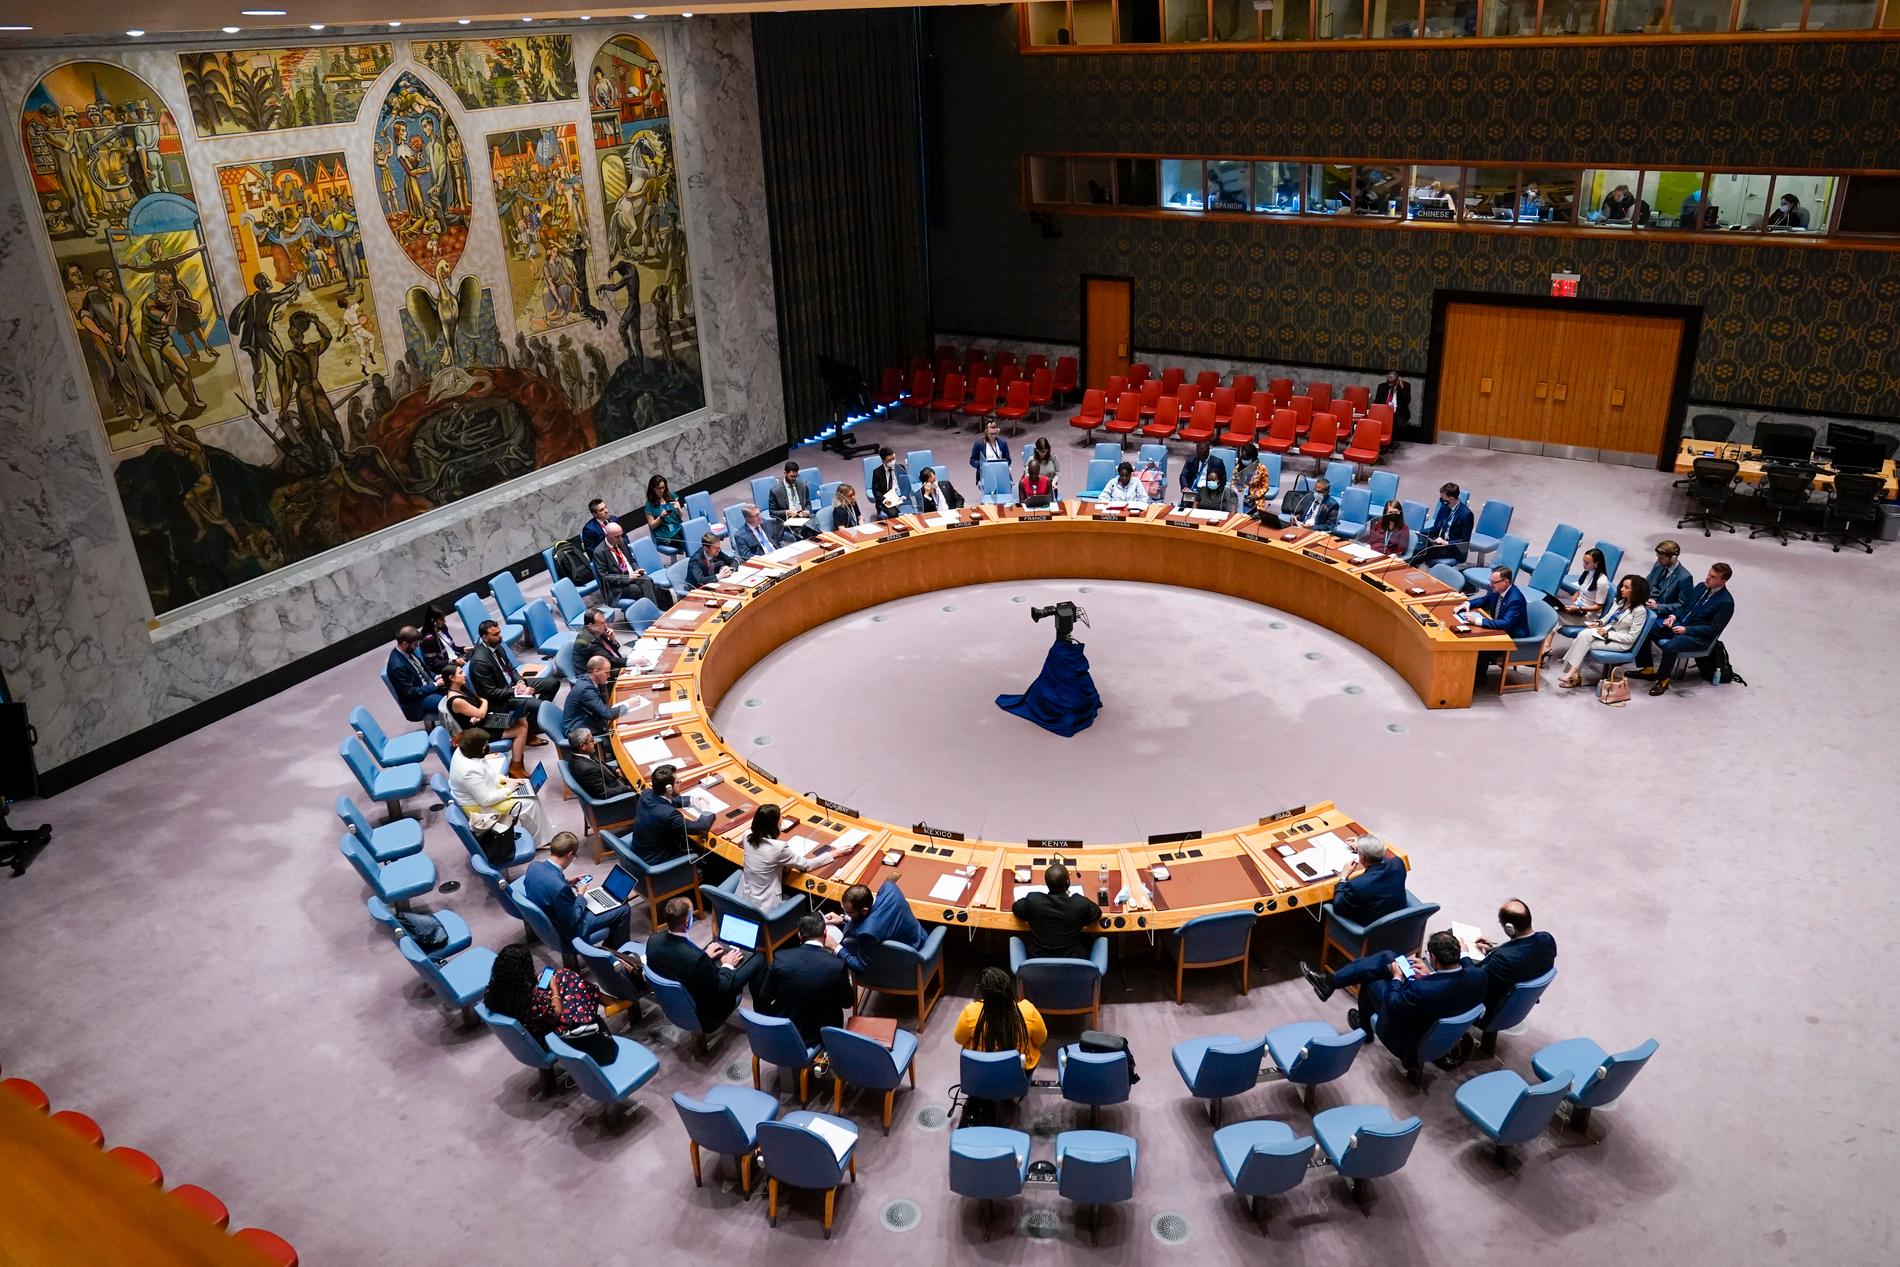 Säkerhetsrådets möte i FN-högkvarteret i New York den 8 juni.